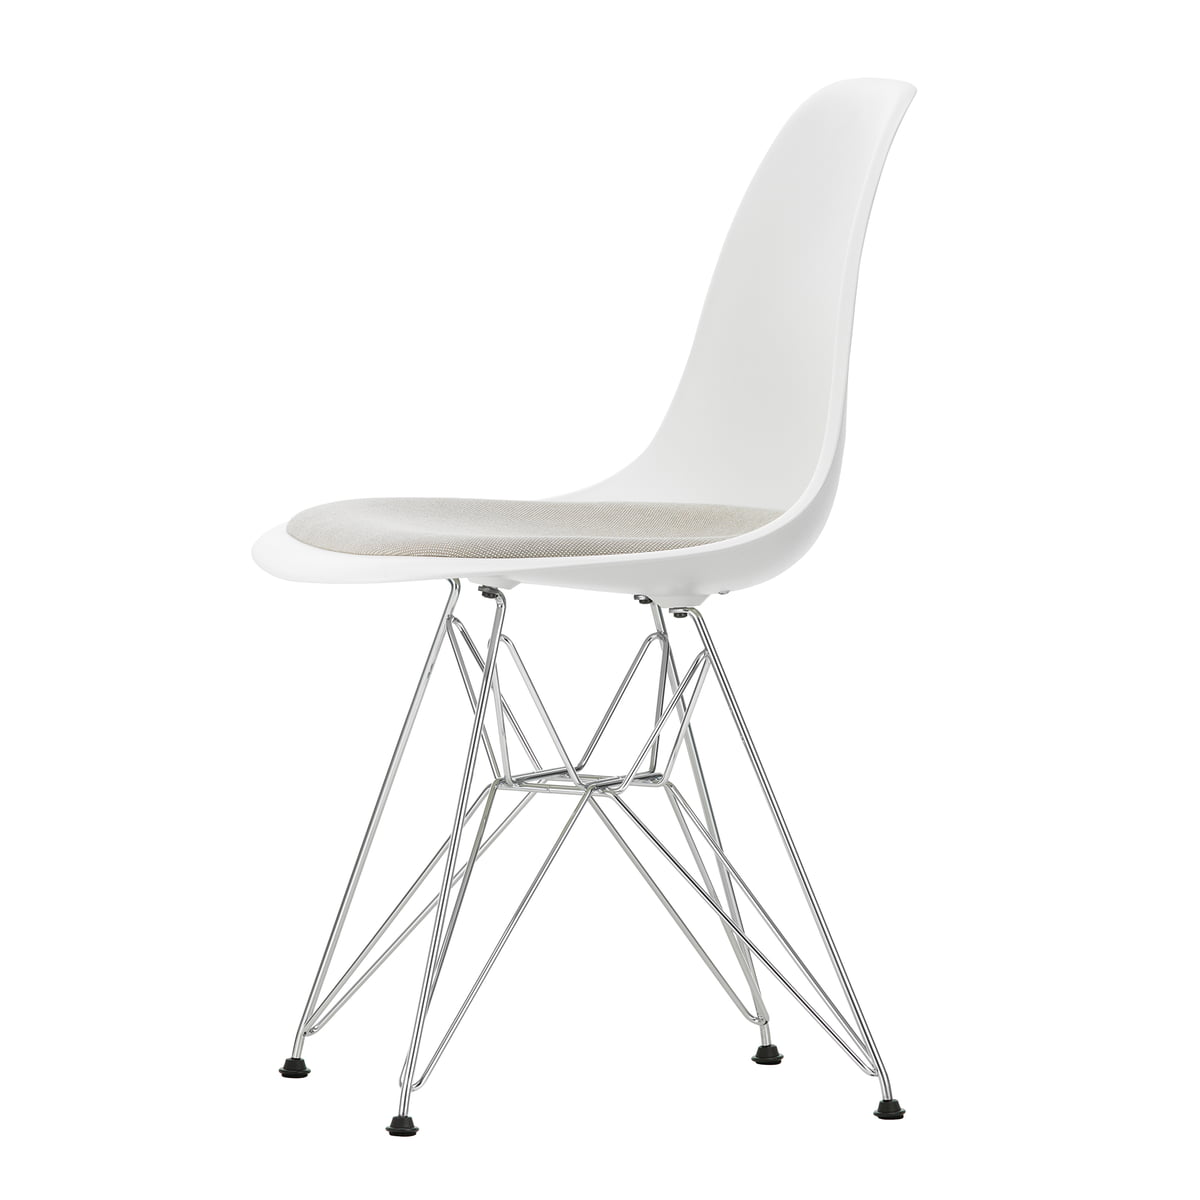 https://cdn.connox.com/m/100030/532815/media/Vitra/Eames-Plastic-Chair-Herstellerserie-2021/Vitra-Eames-Plastic-Side-Chair-DSR-mit-Sitzpolster-Esche-honigfarben-04-weiss-79-warmgrey-elfenbein.jpg